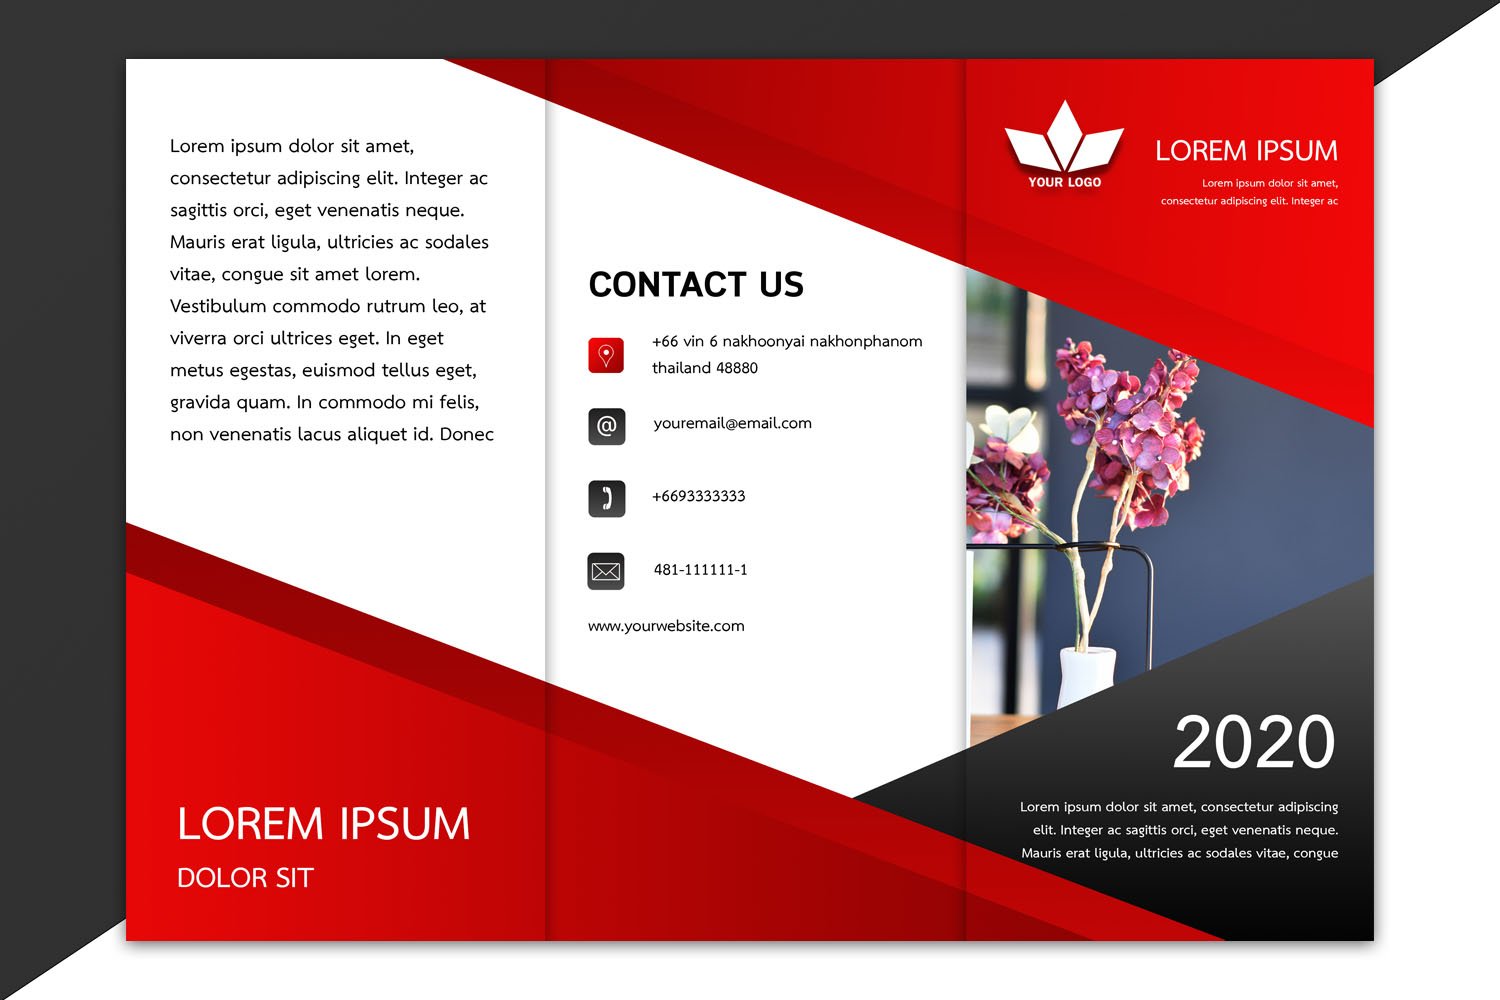 ดาวน์โหลดแผ่นพับสวยๆ สามารถแก้ได้ ไฟล์ Psd และ Word ออกแบบด้วยสีแดง  Download Brochure Template Design | Graphypik